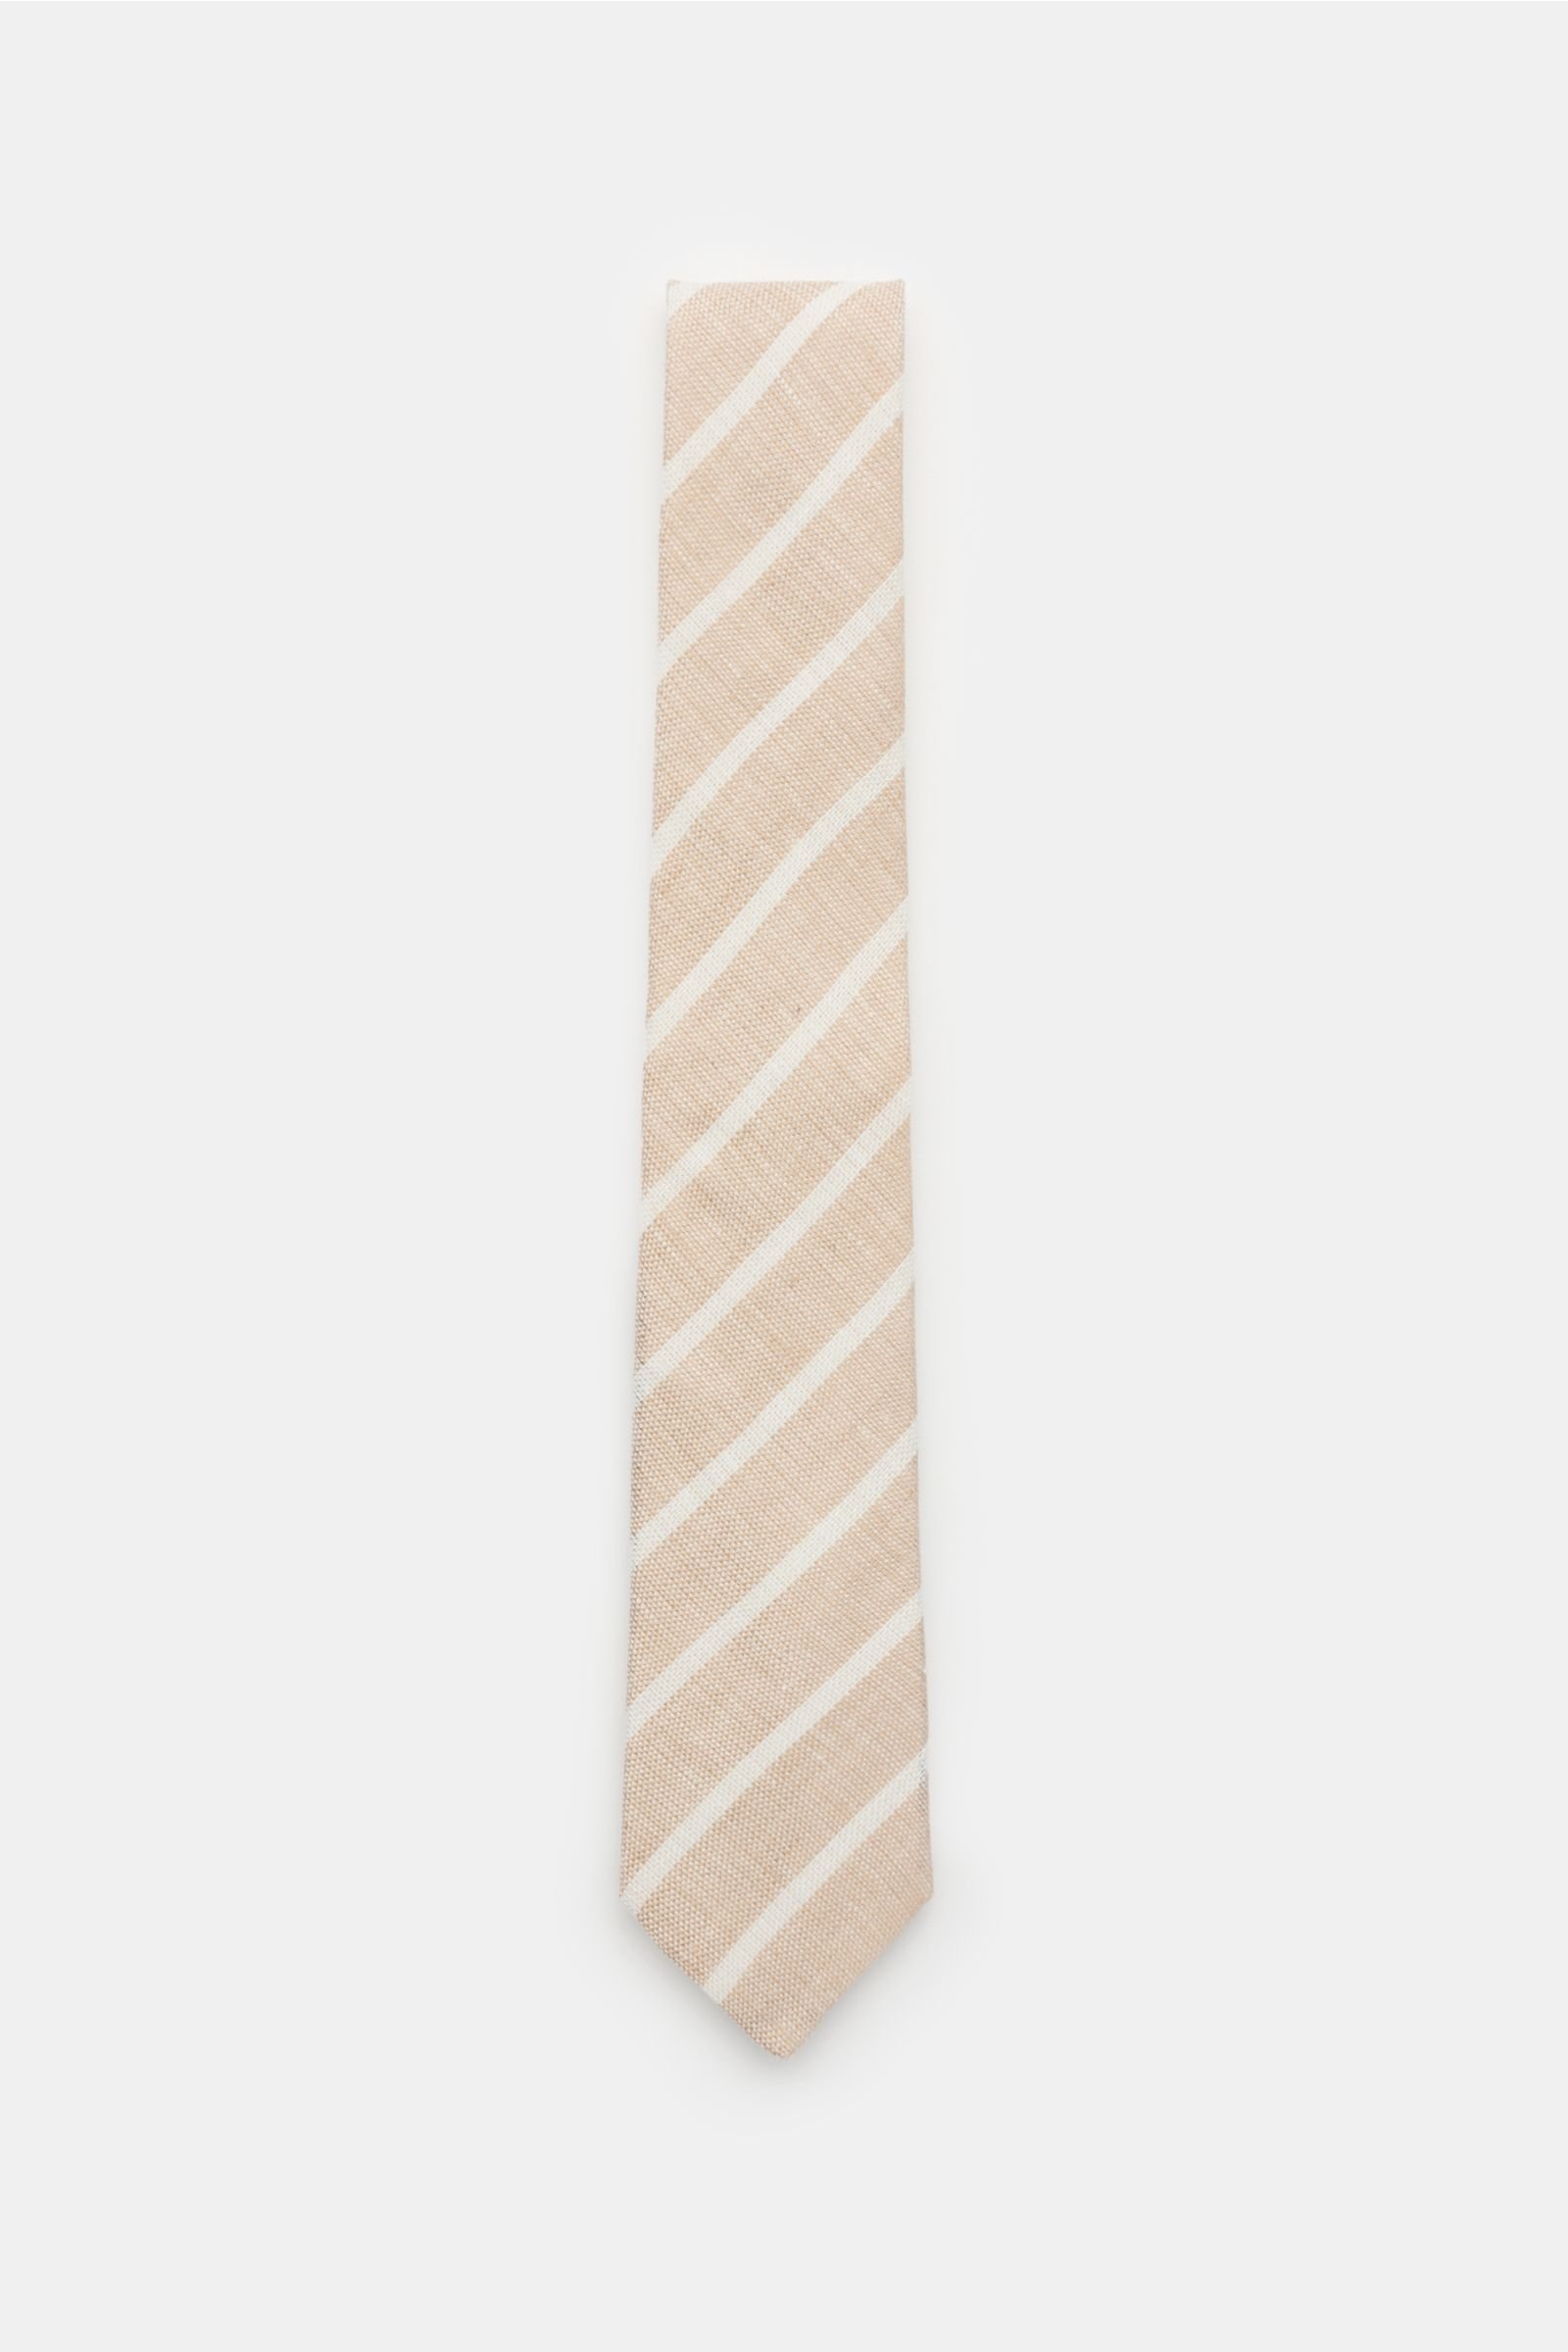 Linen tie beige/white striped